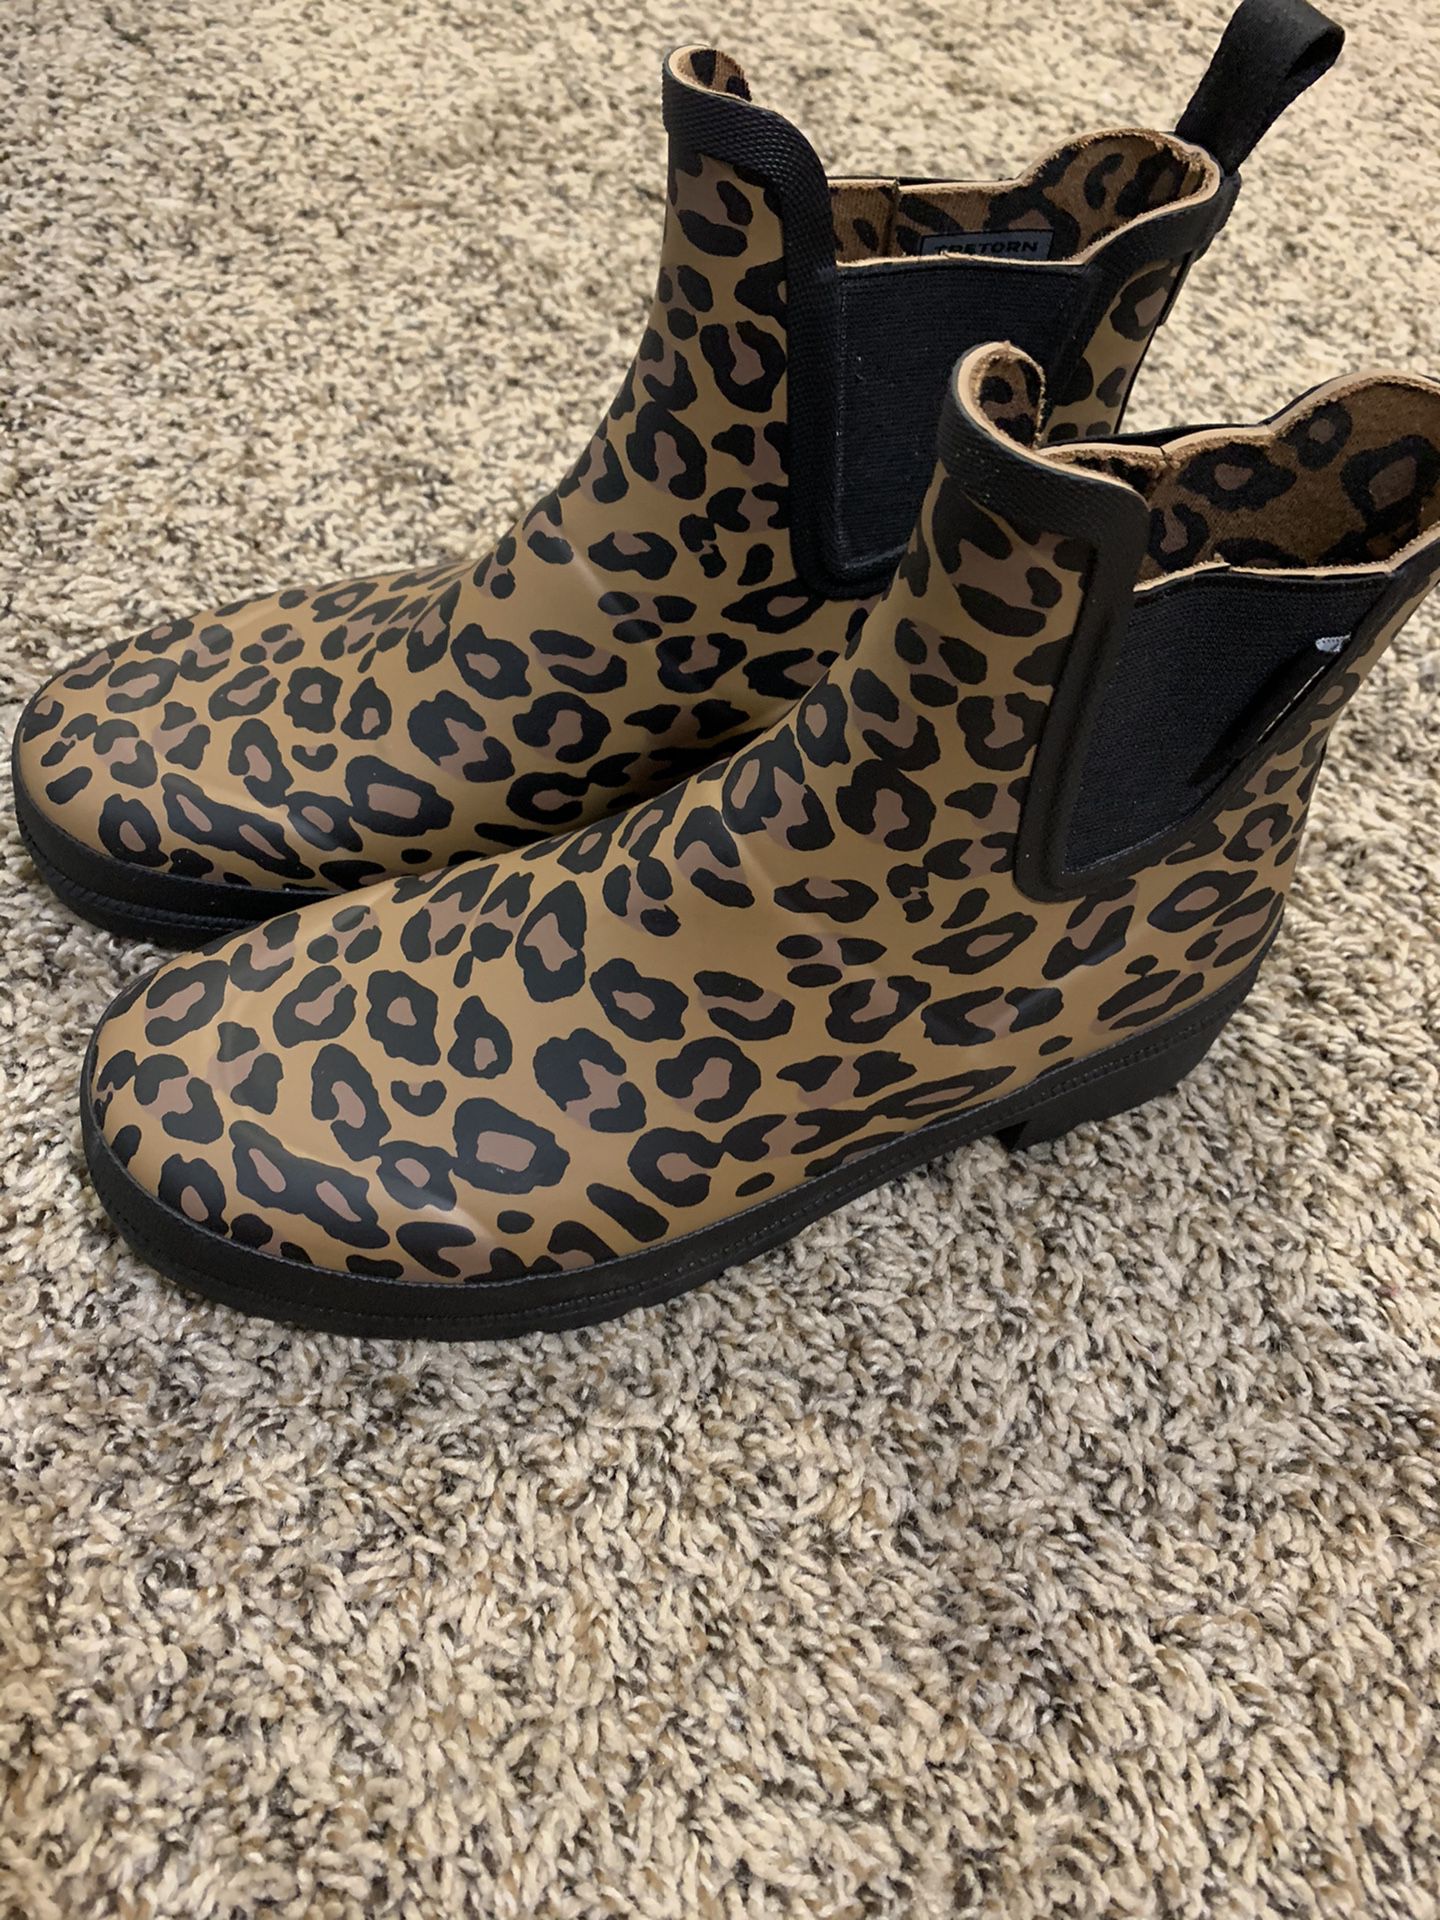 Size 7 tretorn leopard rain boot